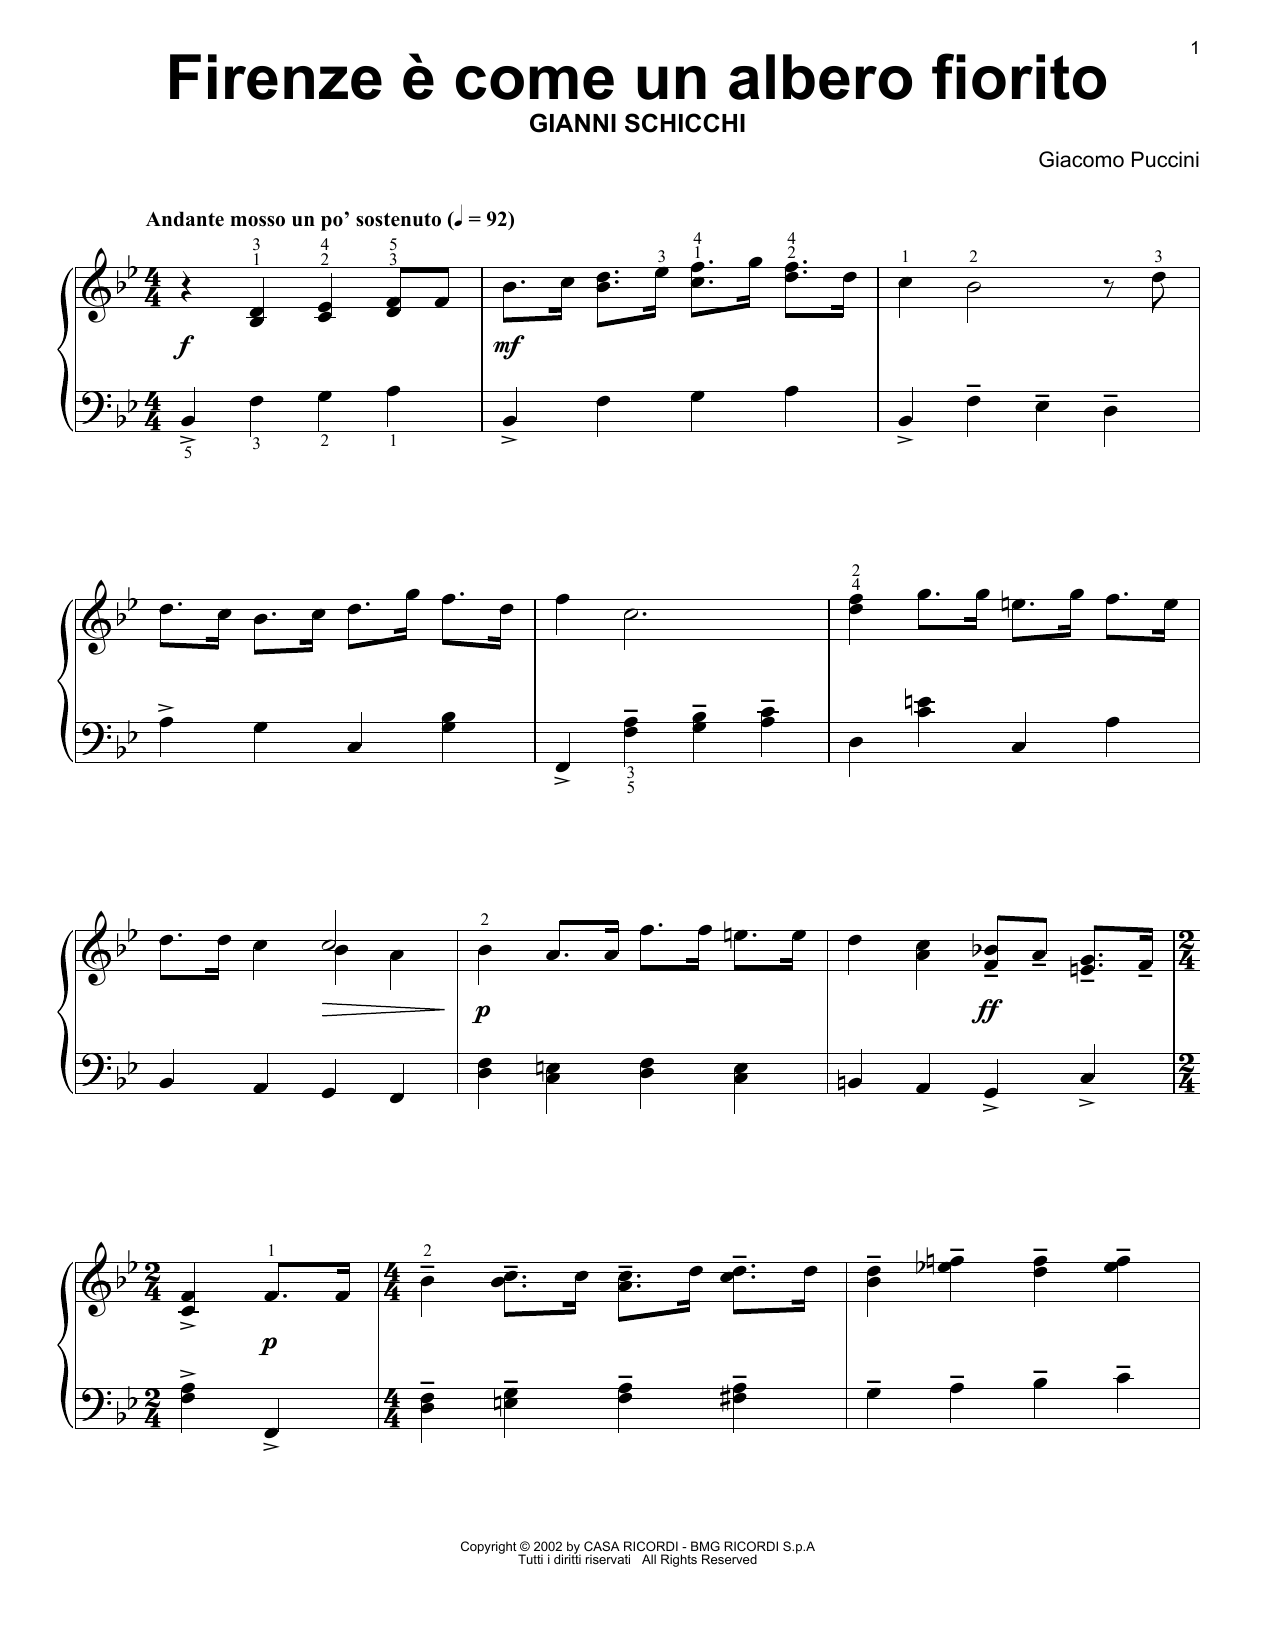 Download Giacomo Puccini Rinuccio's Aria (Firenze E Come Un Alberto Fiorito) Sheet Music and learn how to play Easy Piano Solo PDF digital score in minutes